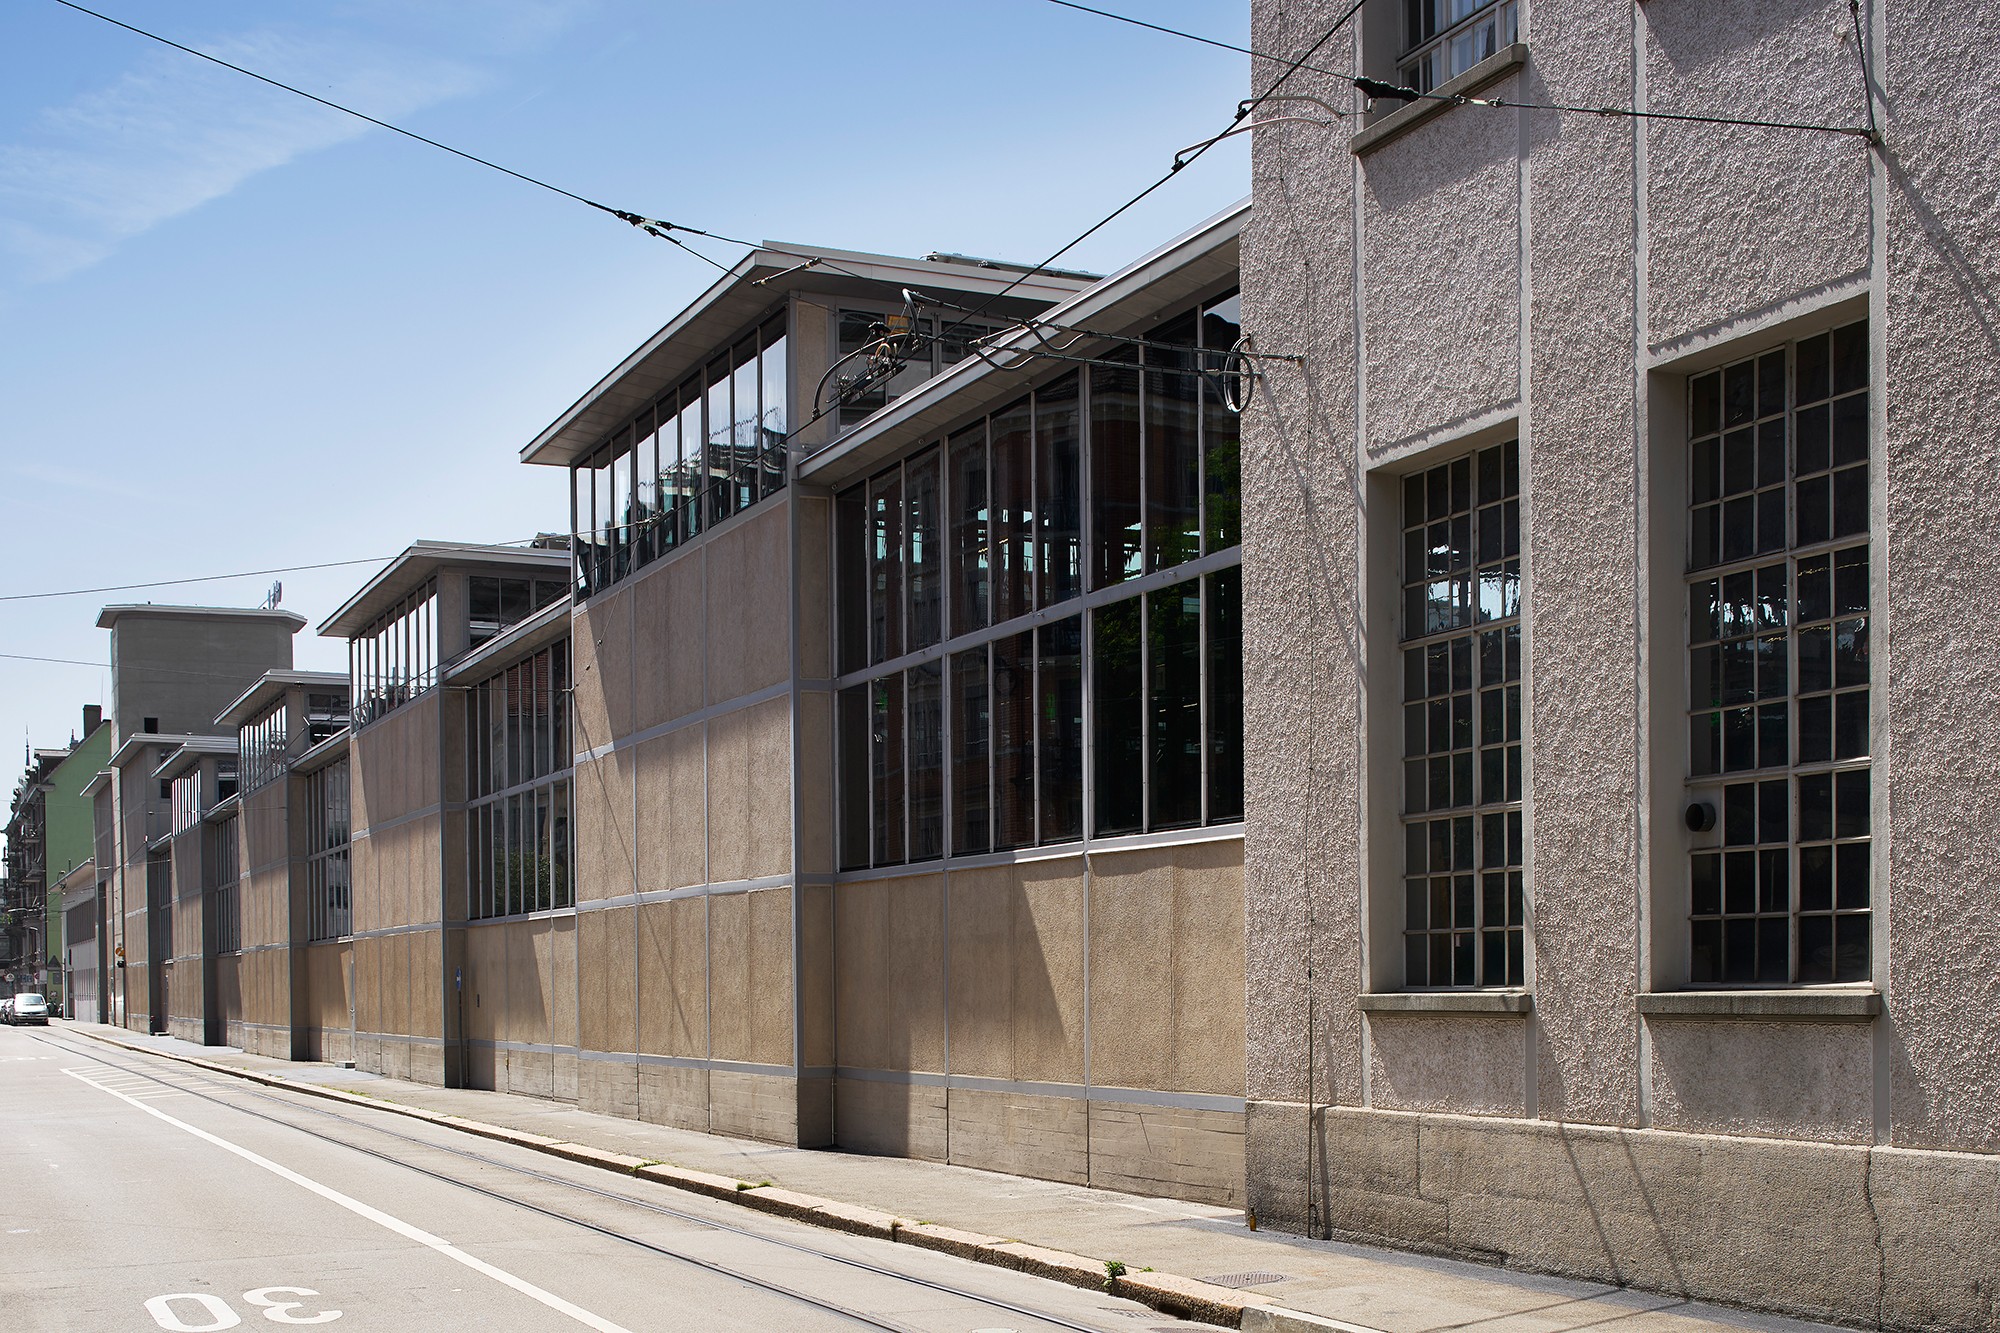 Depothalle Elisabethenstrasse, Ansicht Nordost-Fassade (Bild: Dominic Büttner, Zürich)